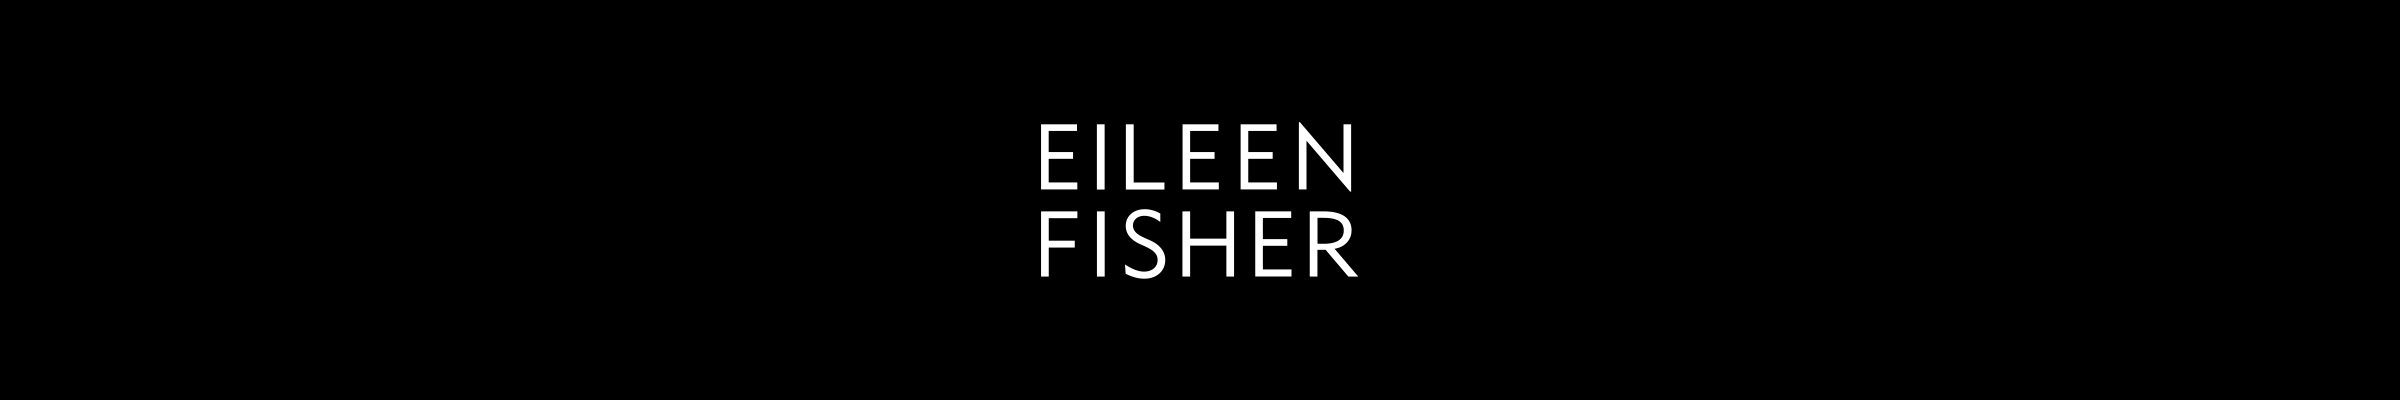 eileen-fisher-banner